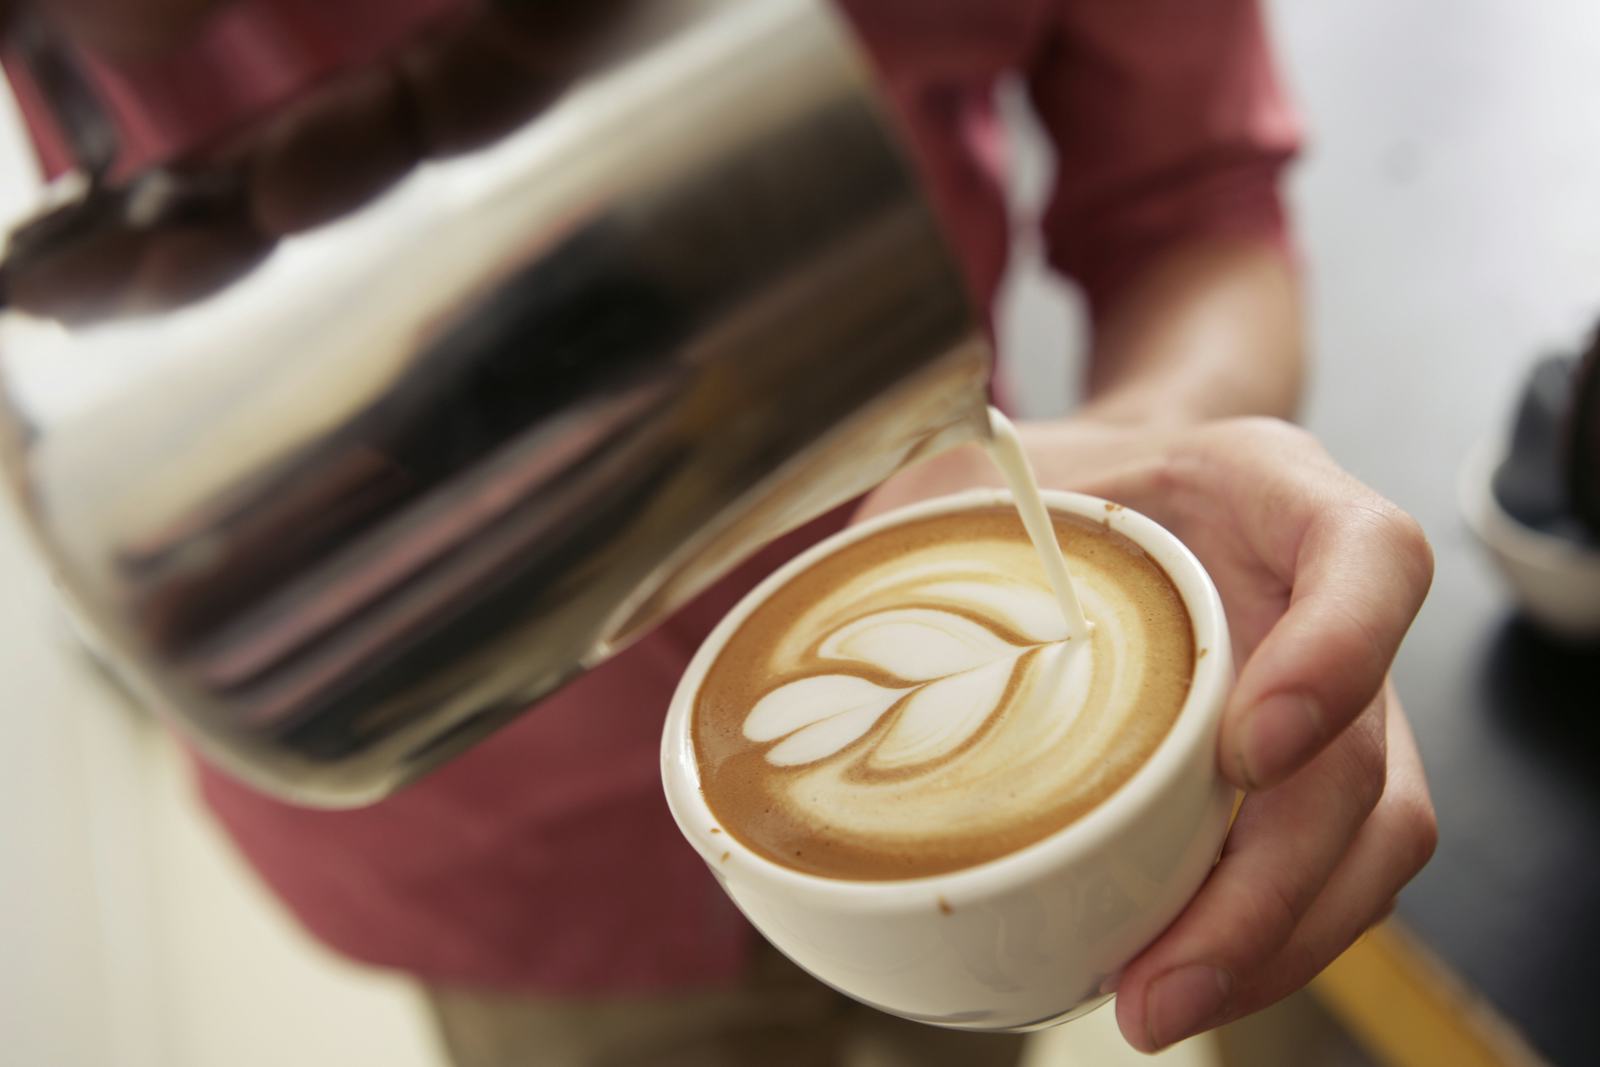 'Koffie als afsluiting diner favoriet horecamoment